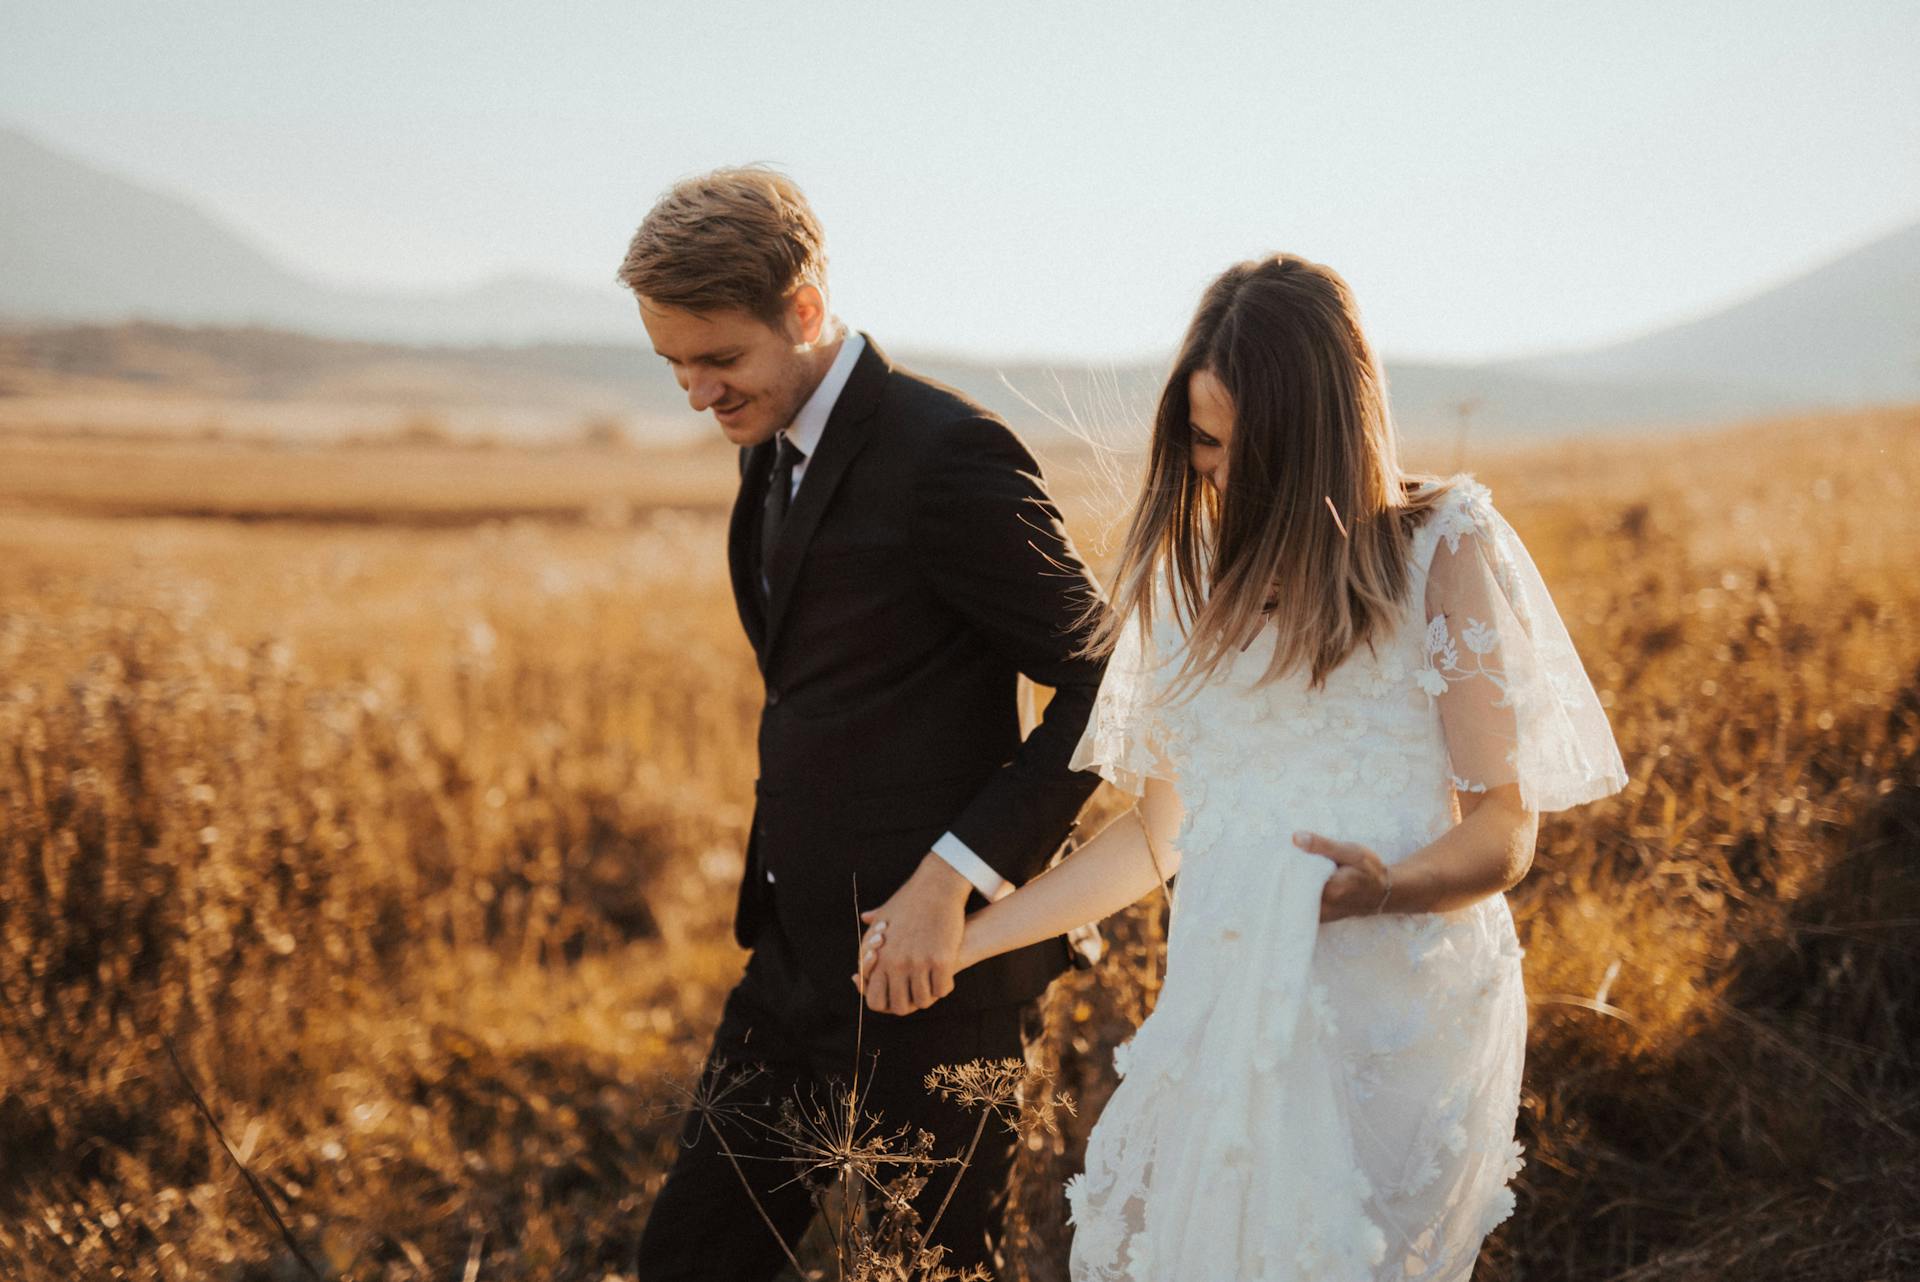 Un couple marié dans un champ | Source : Pexels